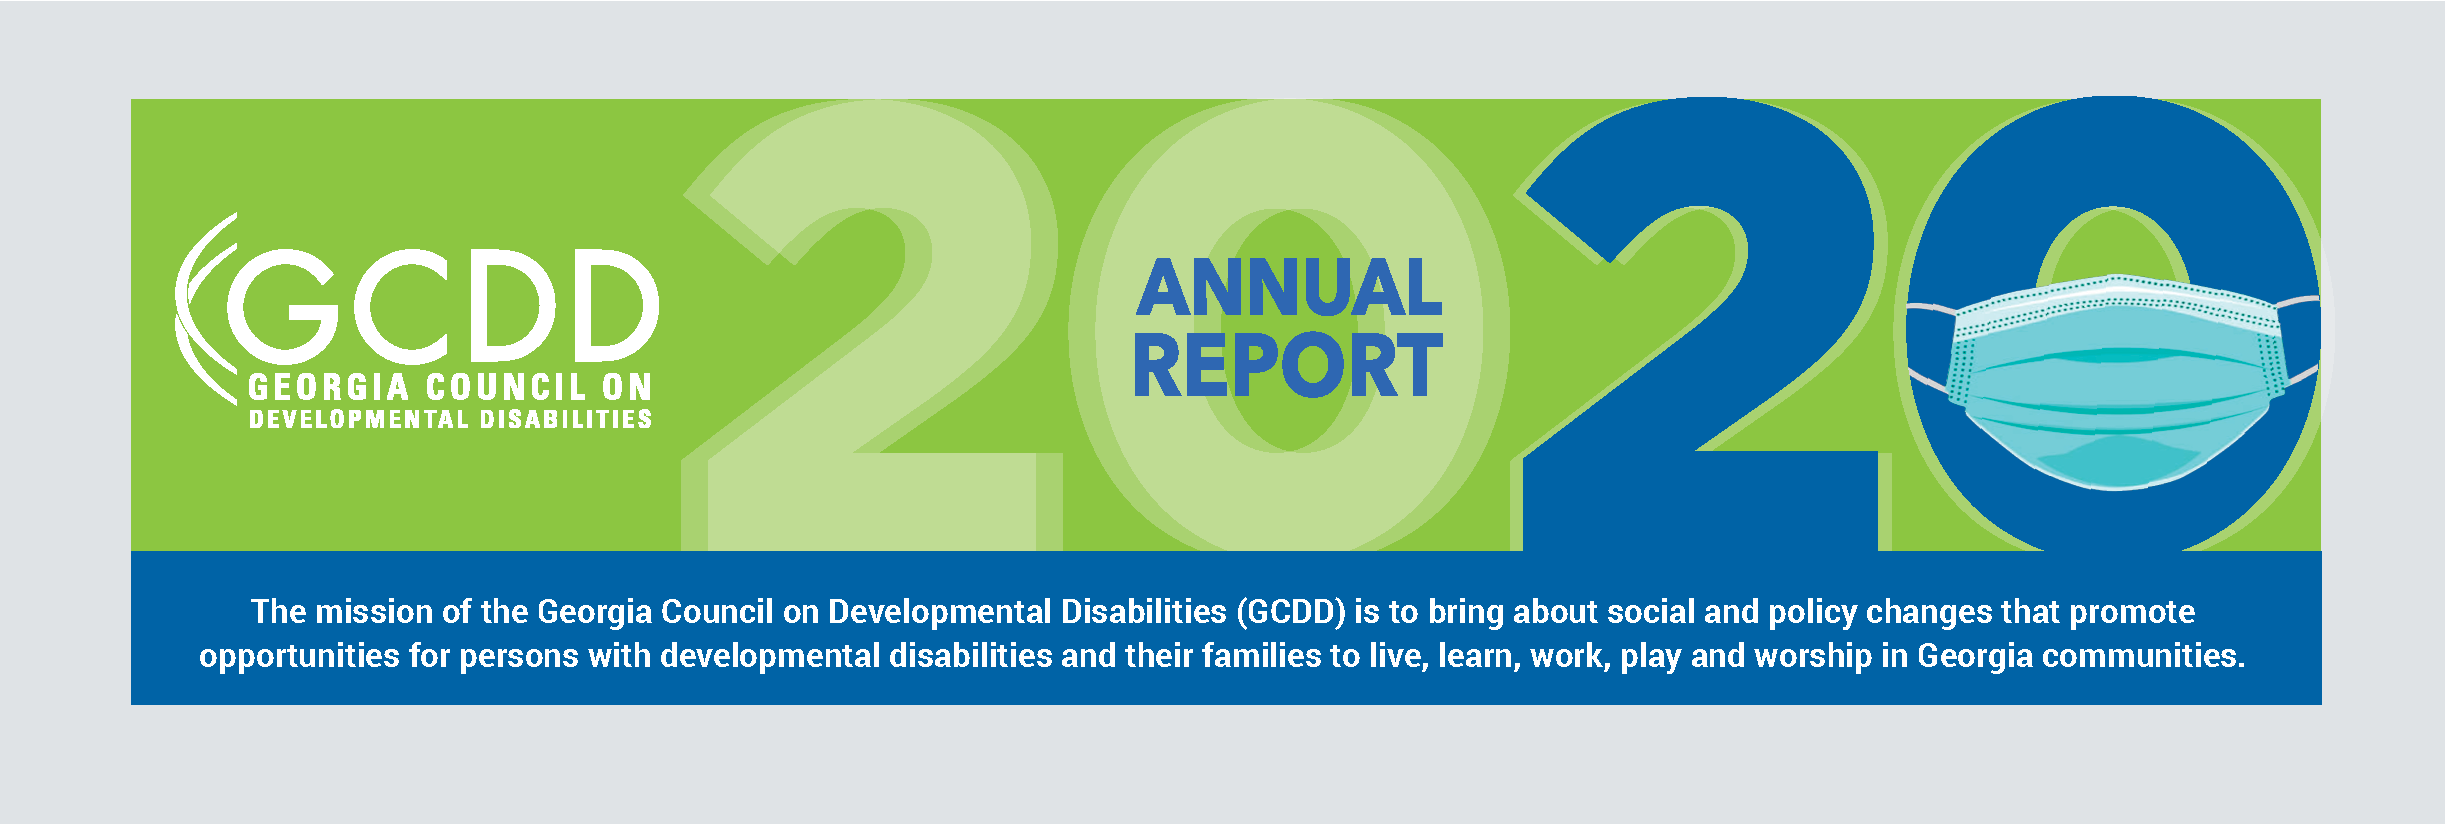 GCDD Annual Report cover 2020